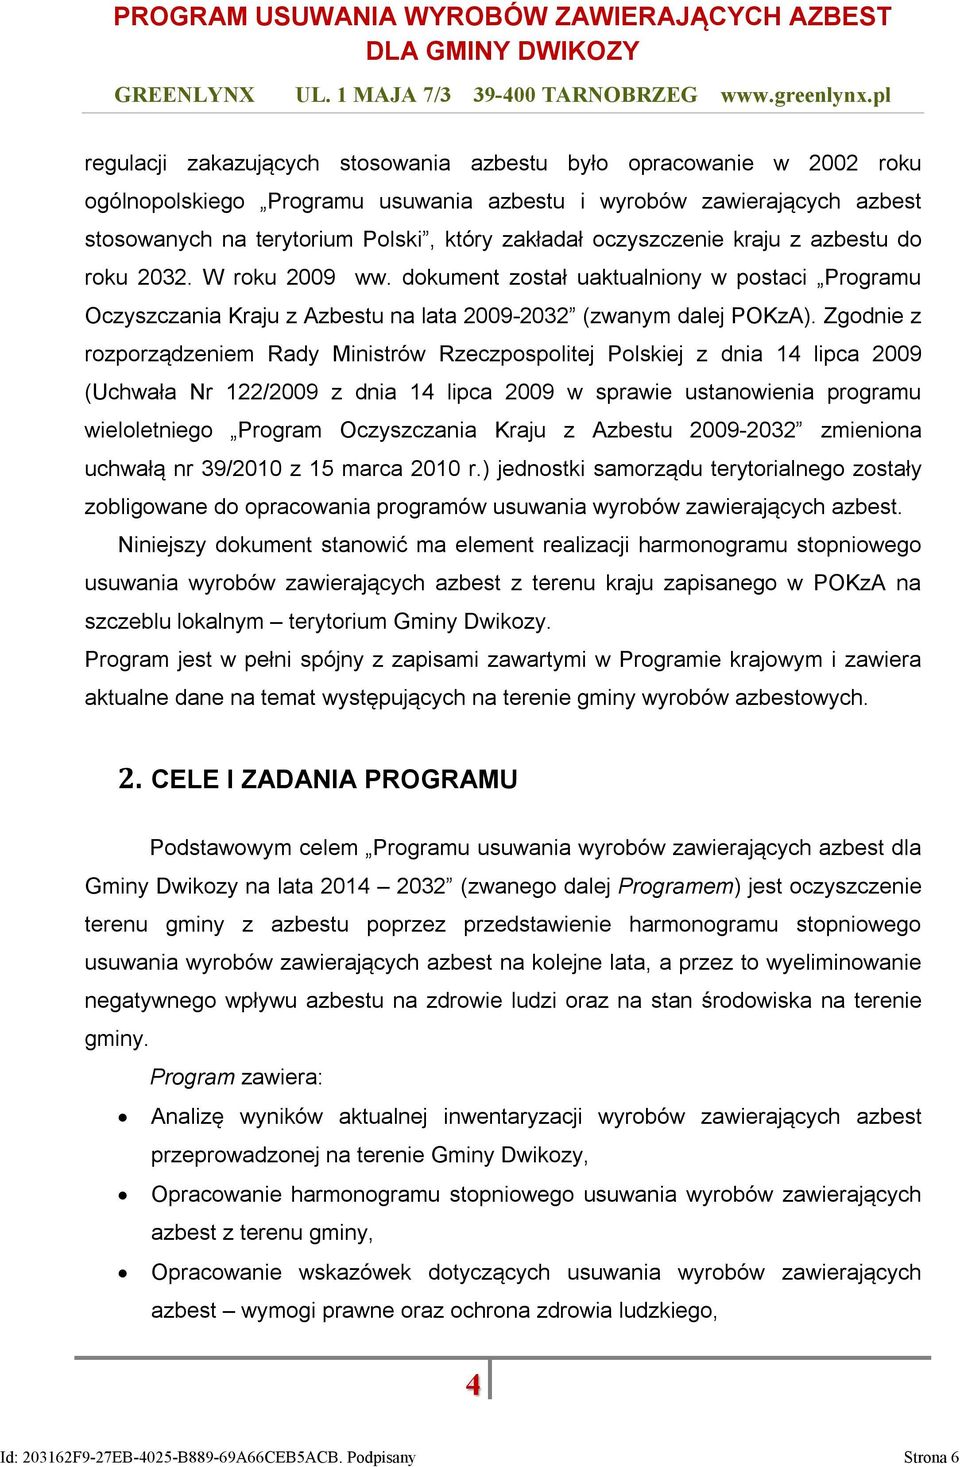 Zgodnie z rozporządzeniem Rady Ministrów Rzeczpospolitej Polskiej z dnia 14 lipca 2009 (Uchwała Nr 122/2009 z dnia 14 lipca 2009 w sprawie ustanowienia programu wieloletniego Program Oczyszczania